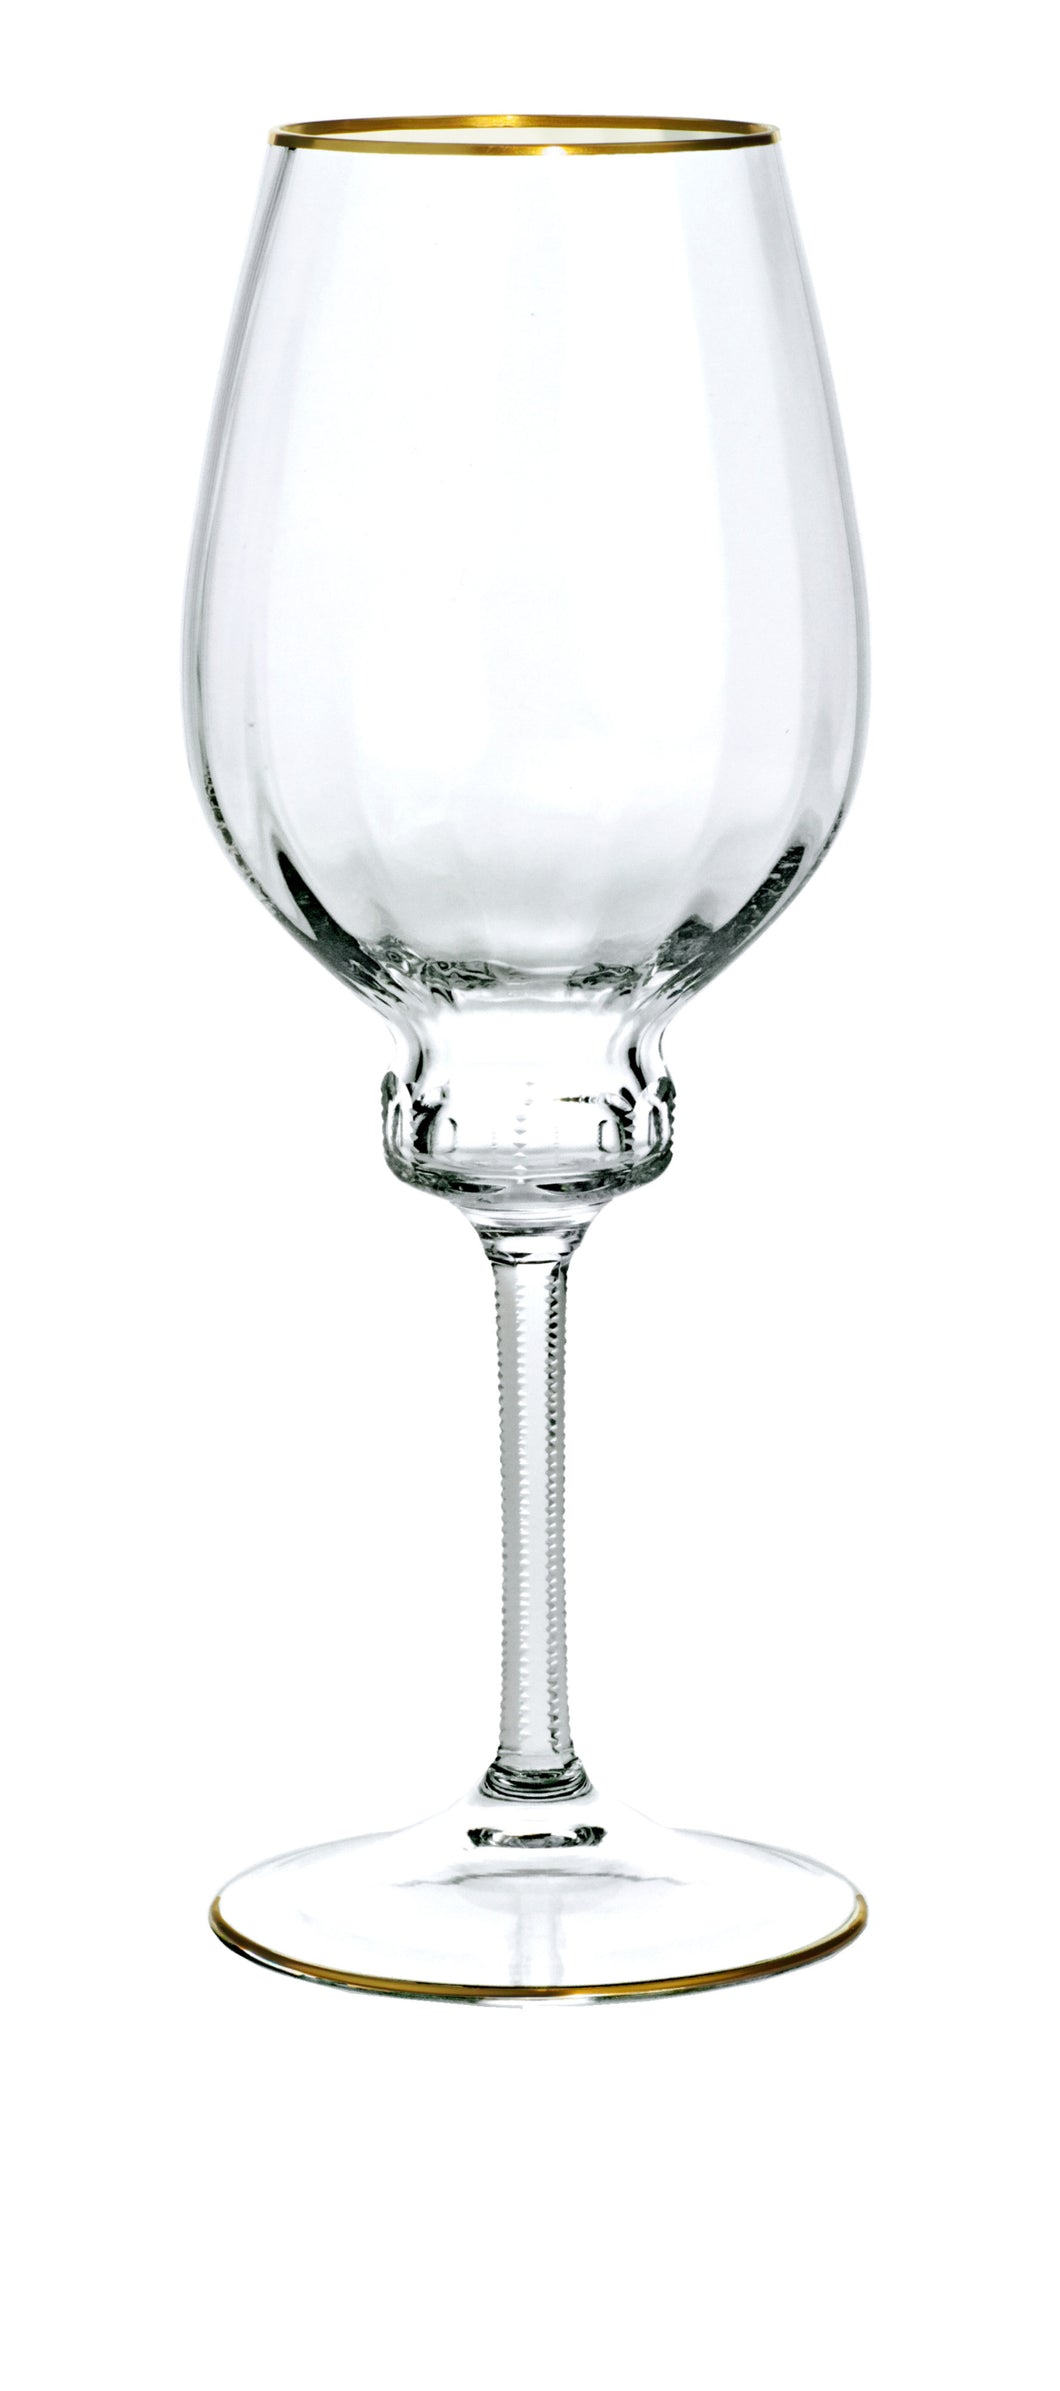 DELPHI Rotweinglas 256 mm - klares Glas, Stielschliff, Flächenschliff, Eckenschliff, Goldrand